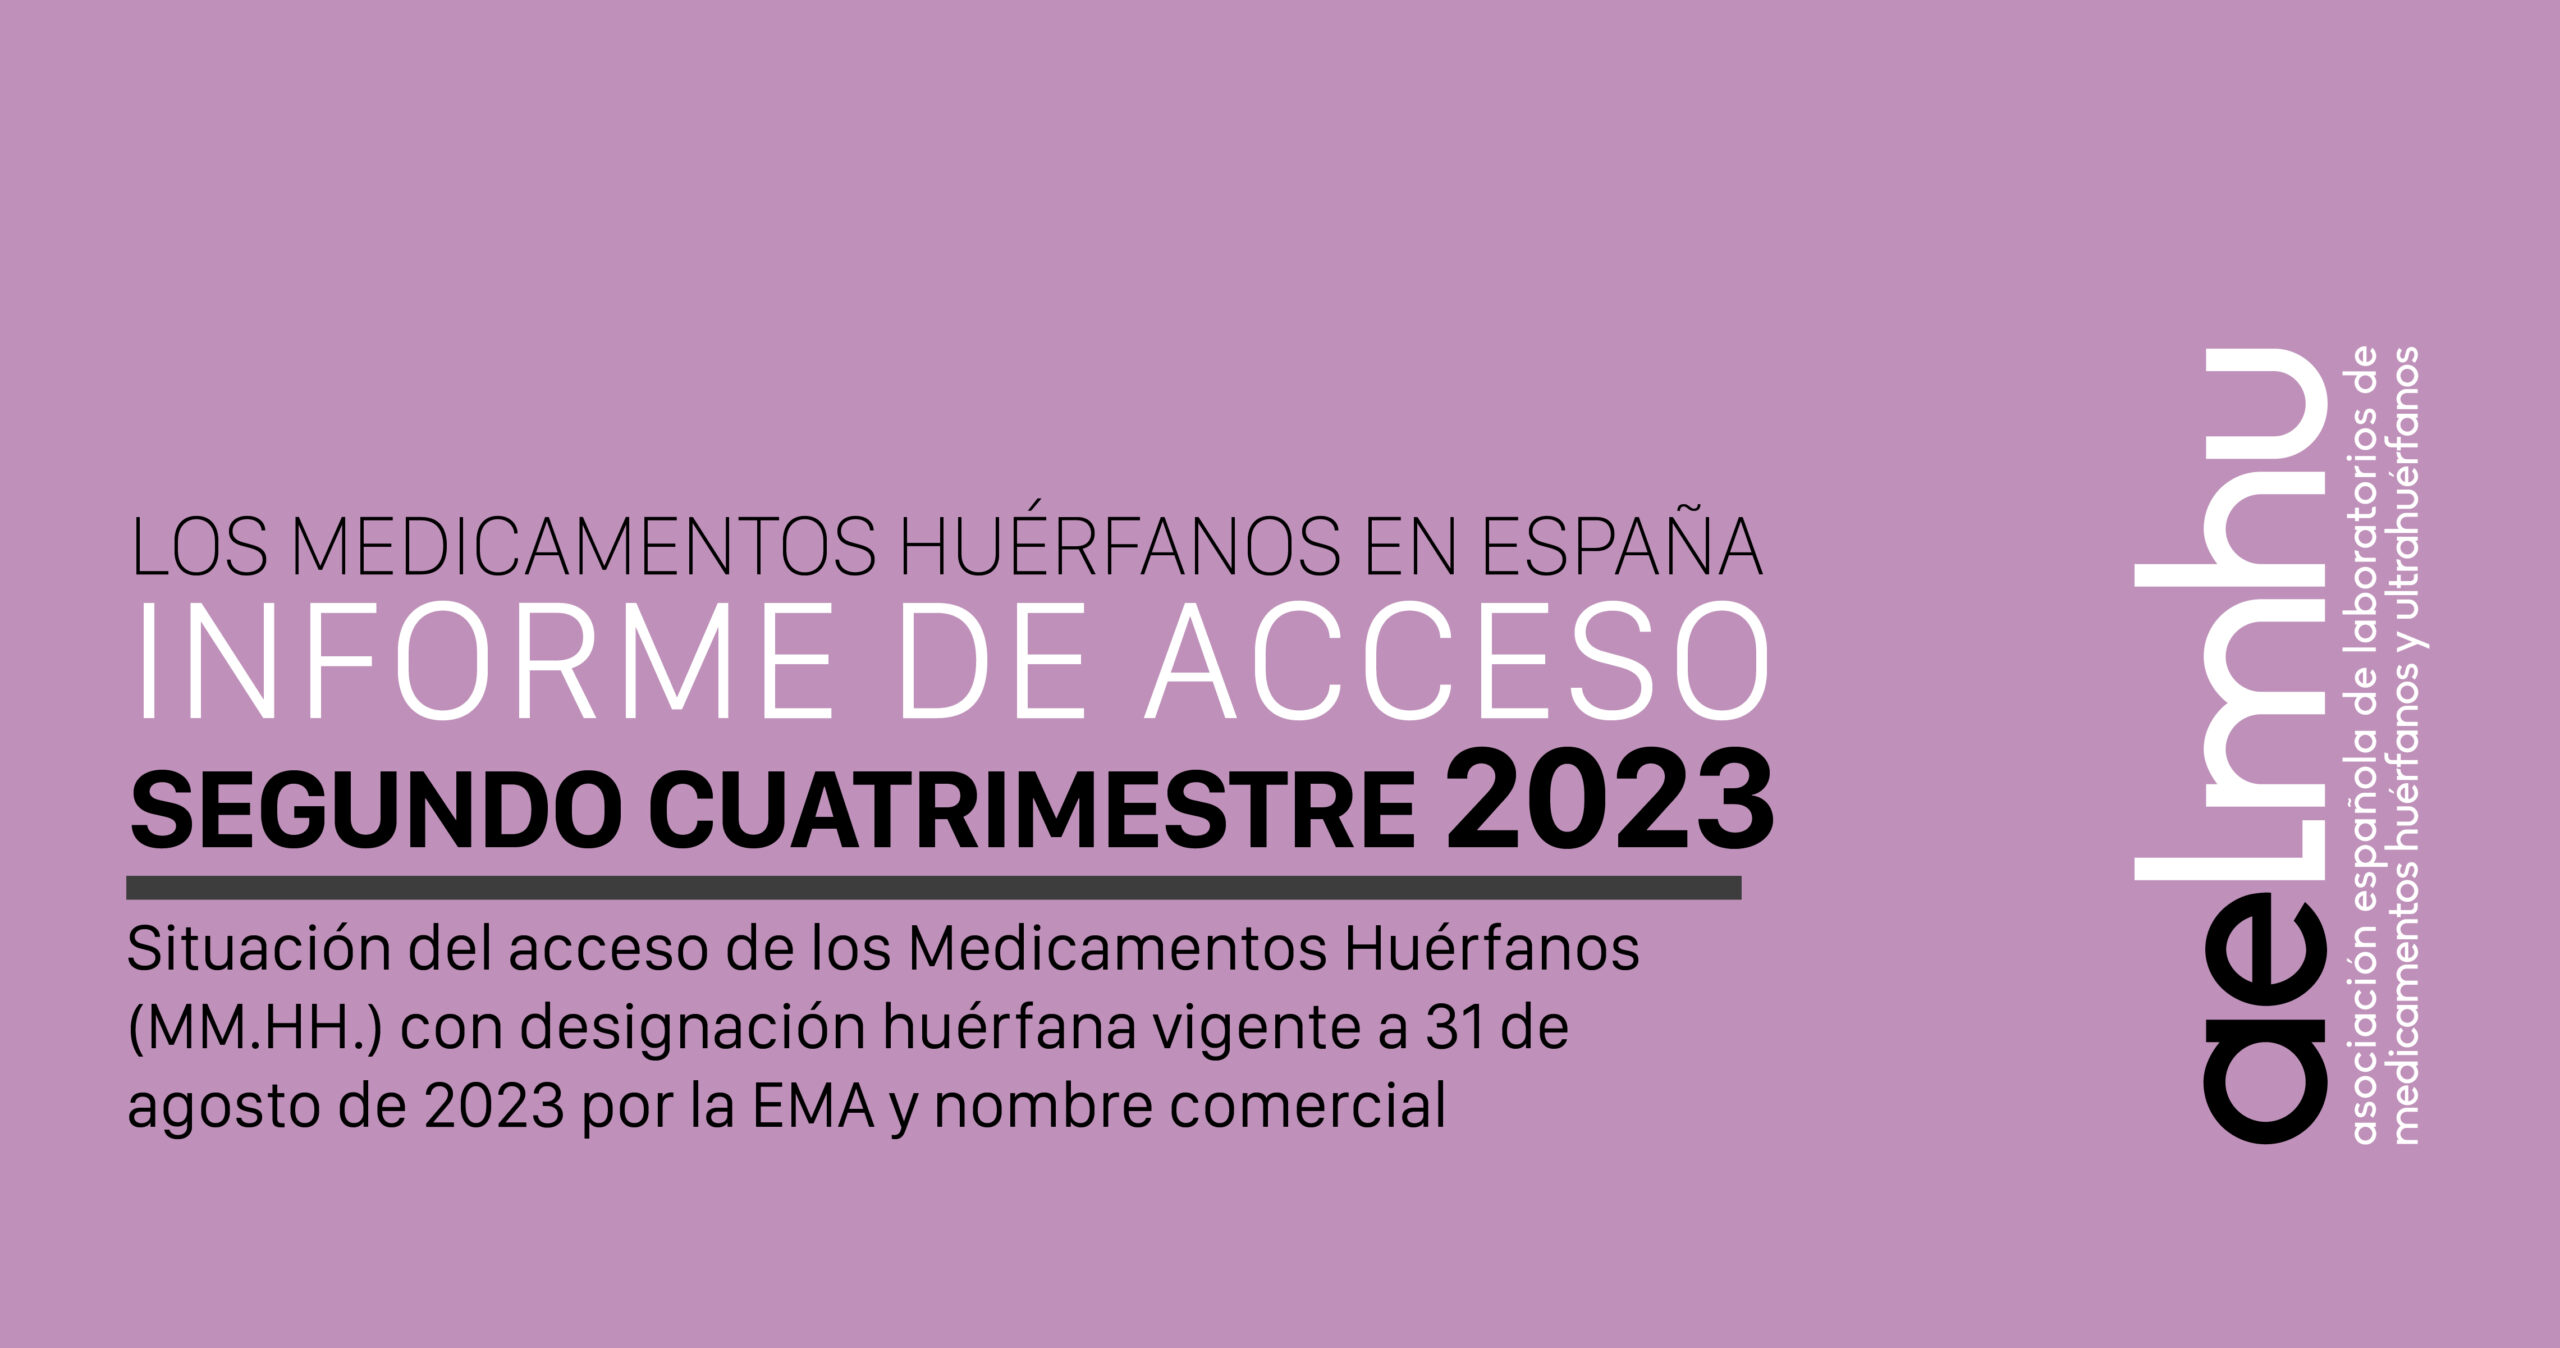 Segundo informe cuatrimestral de acceso a los medicamentos huérfanos en 2023